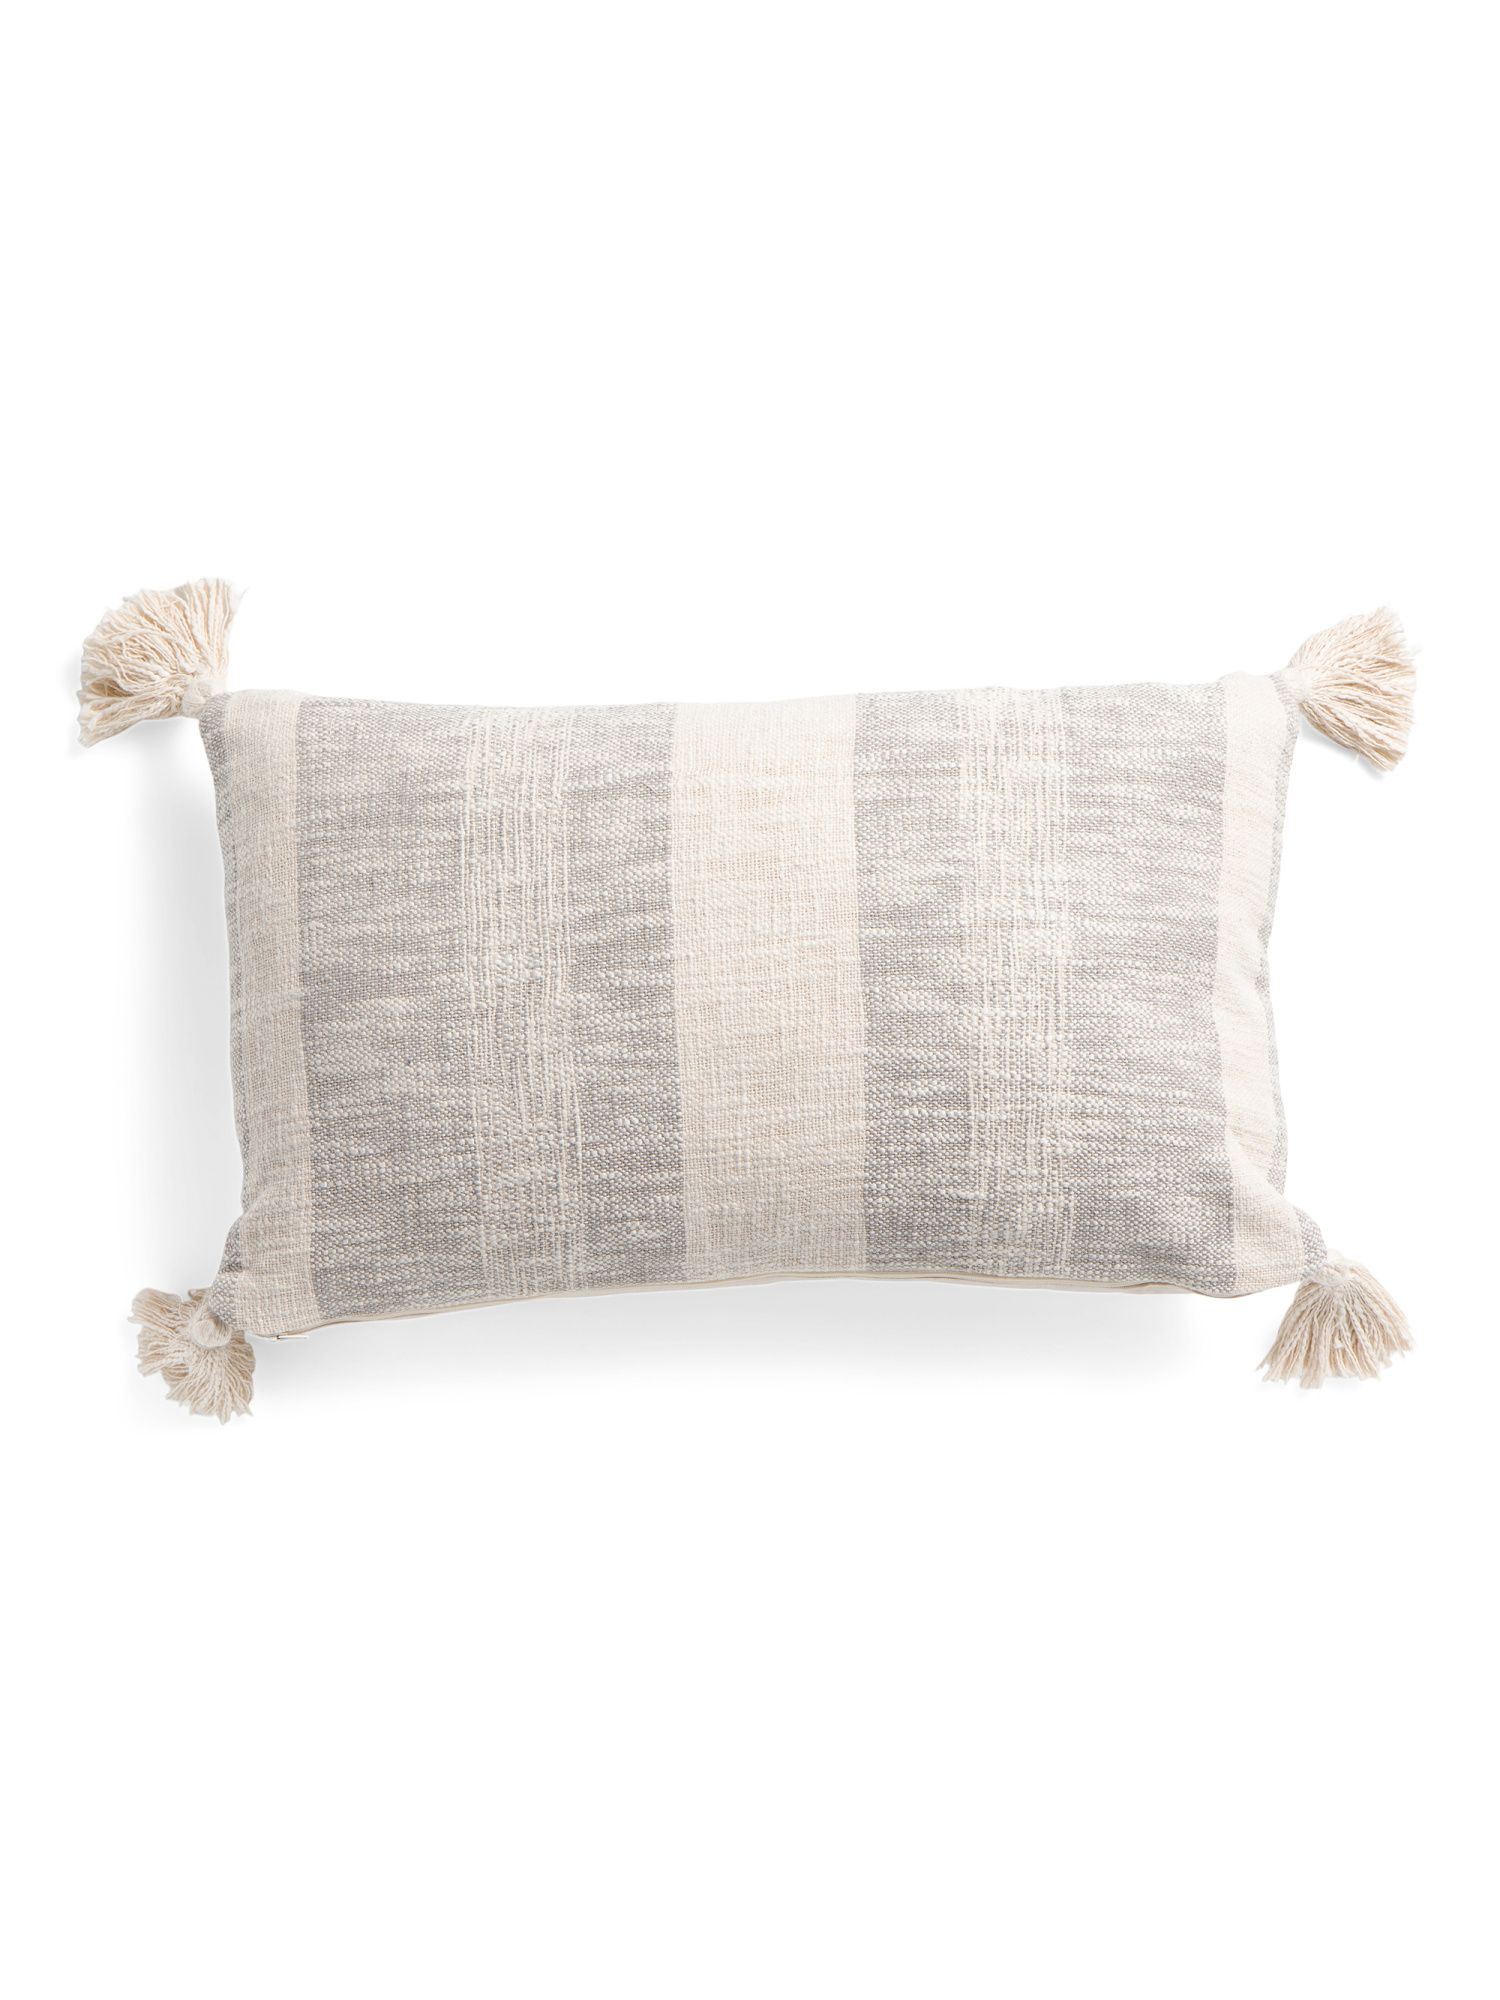 14x24 Linen Look Tassel Pillow | TJ Maxx